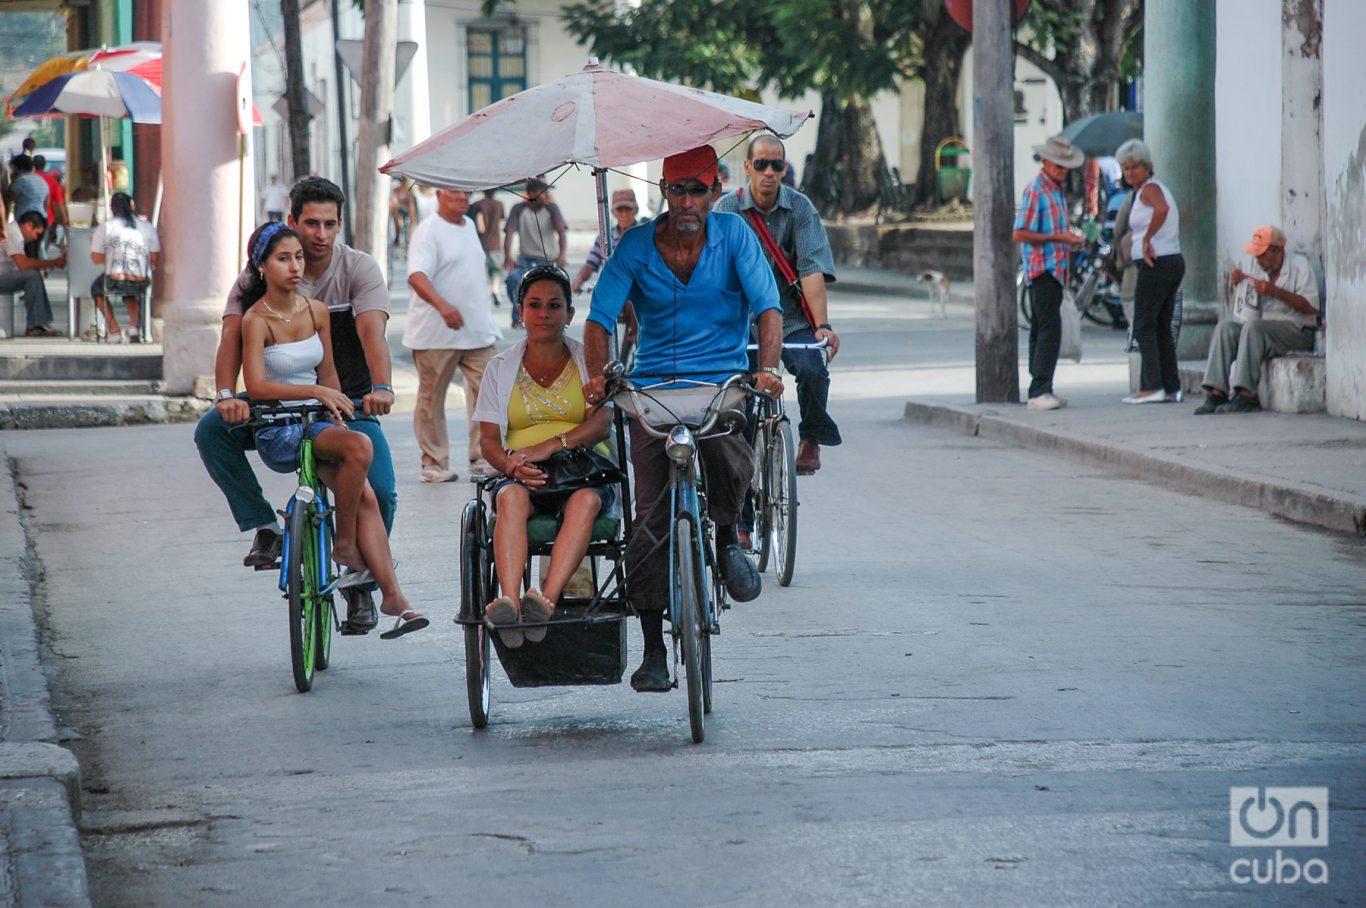 El ajetreo particular en las calles del centro de la ciudad donde prepondera los bici taxis y bicicletas. Foto: Kaloian.